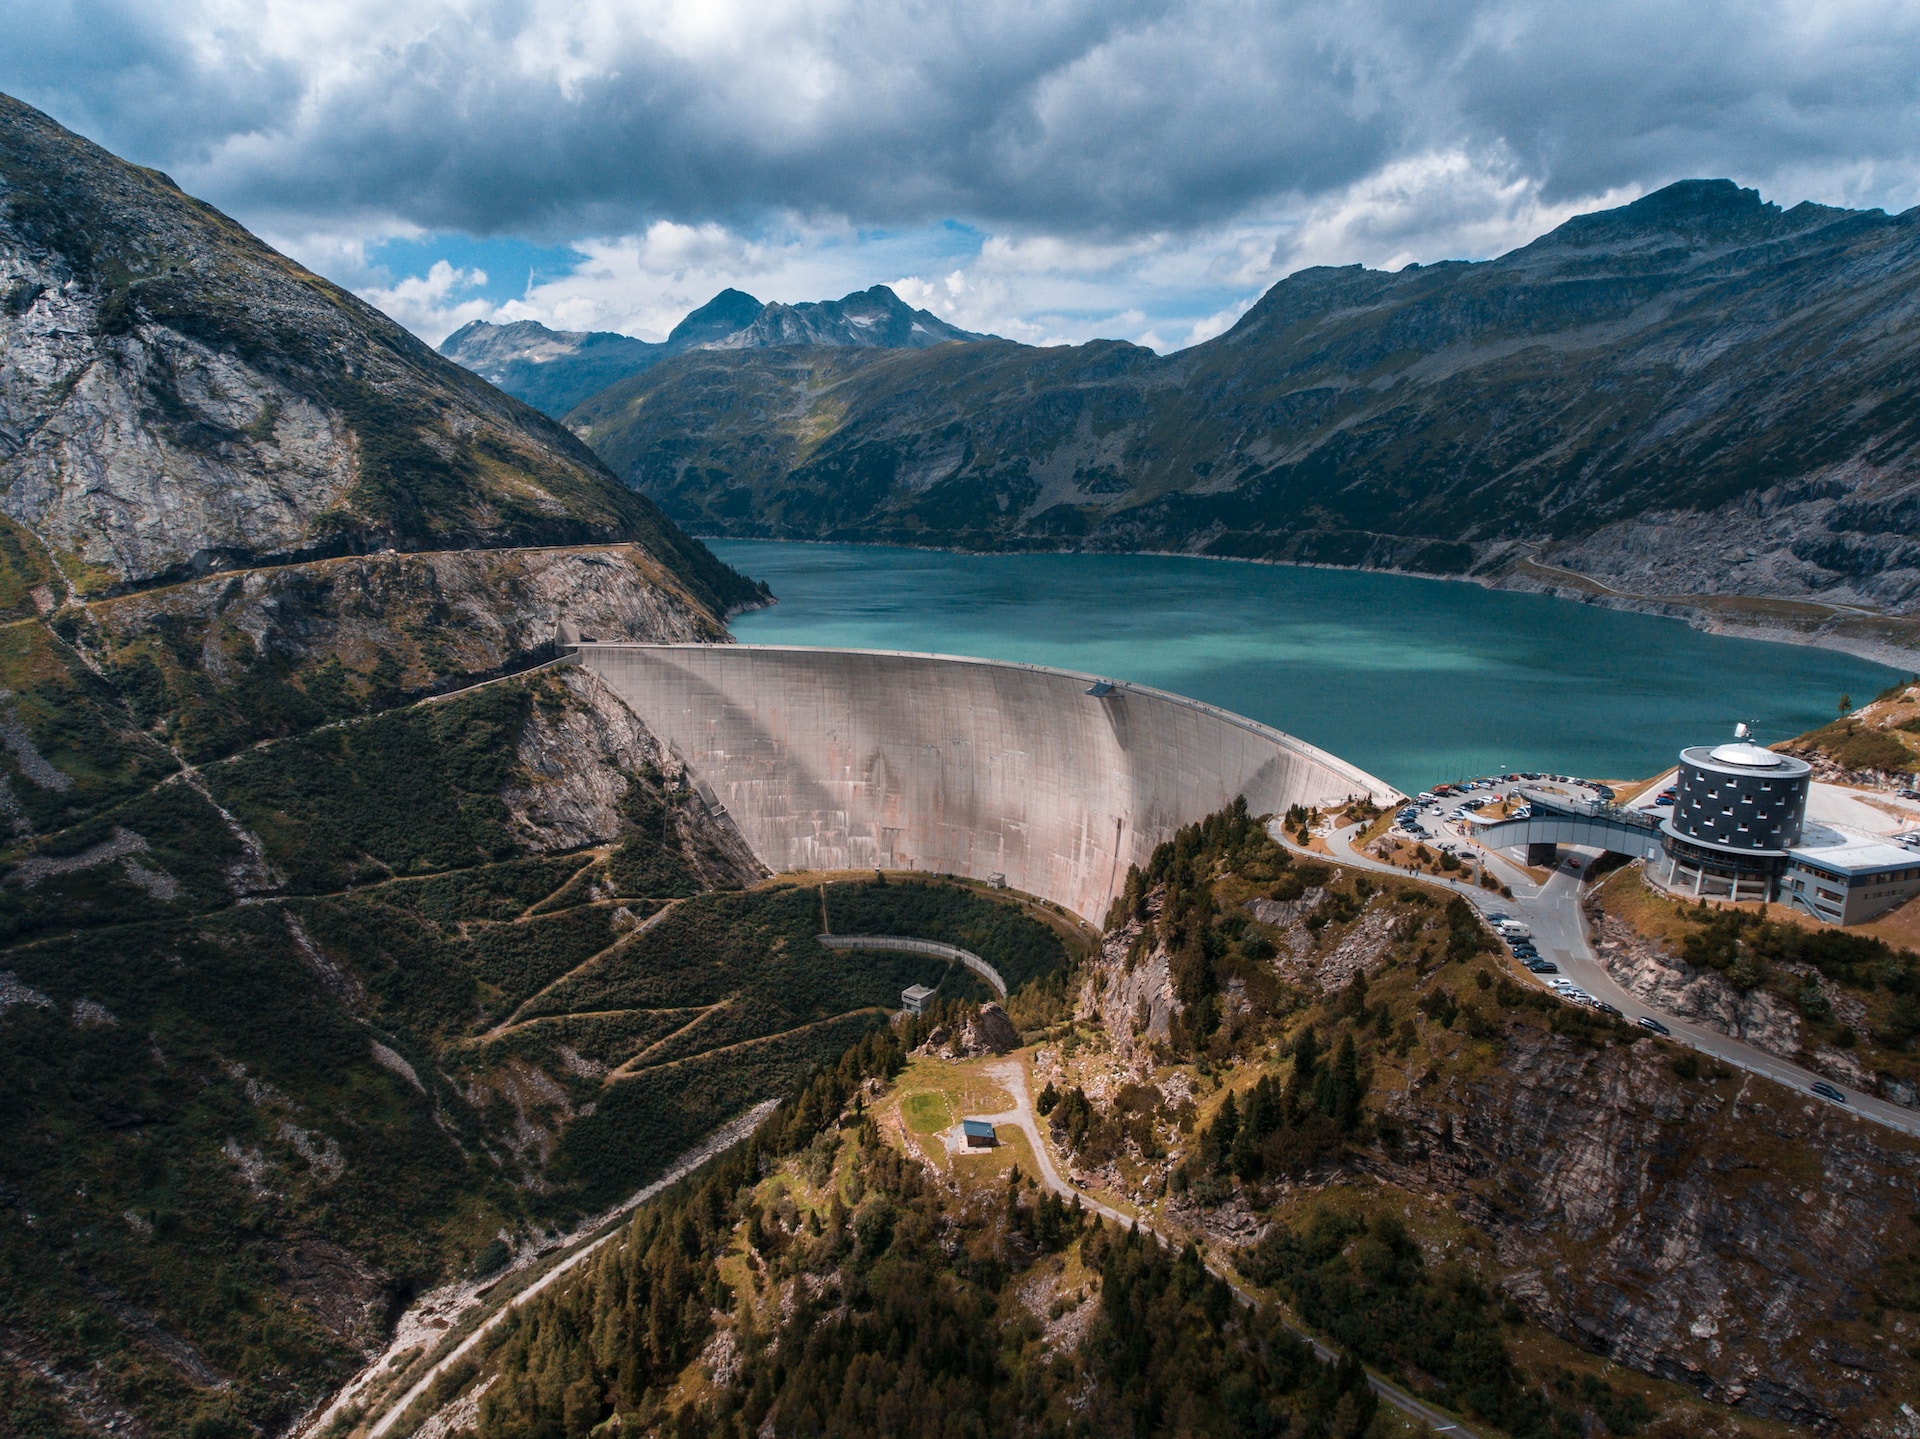 Luchtfoto van een dam met waterreservoir